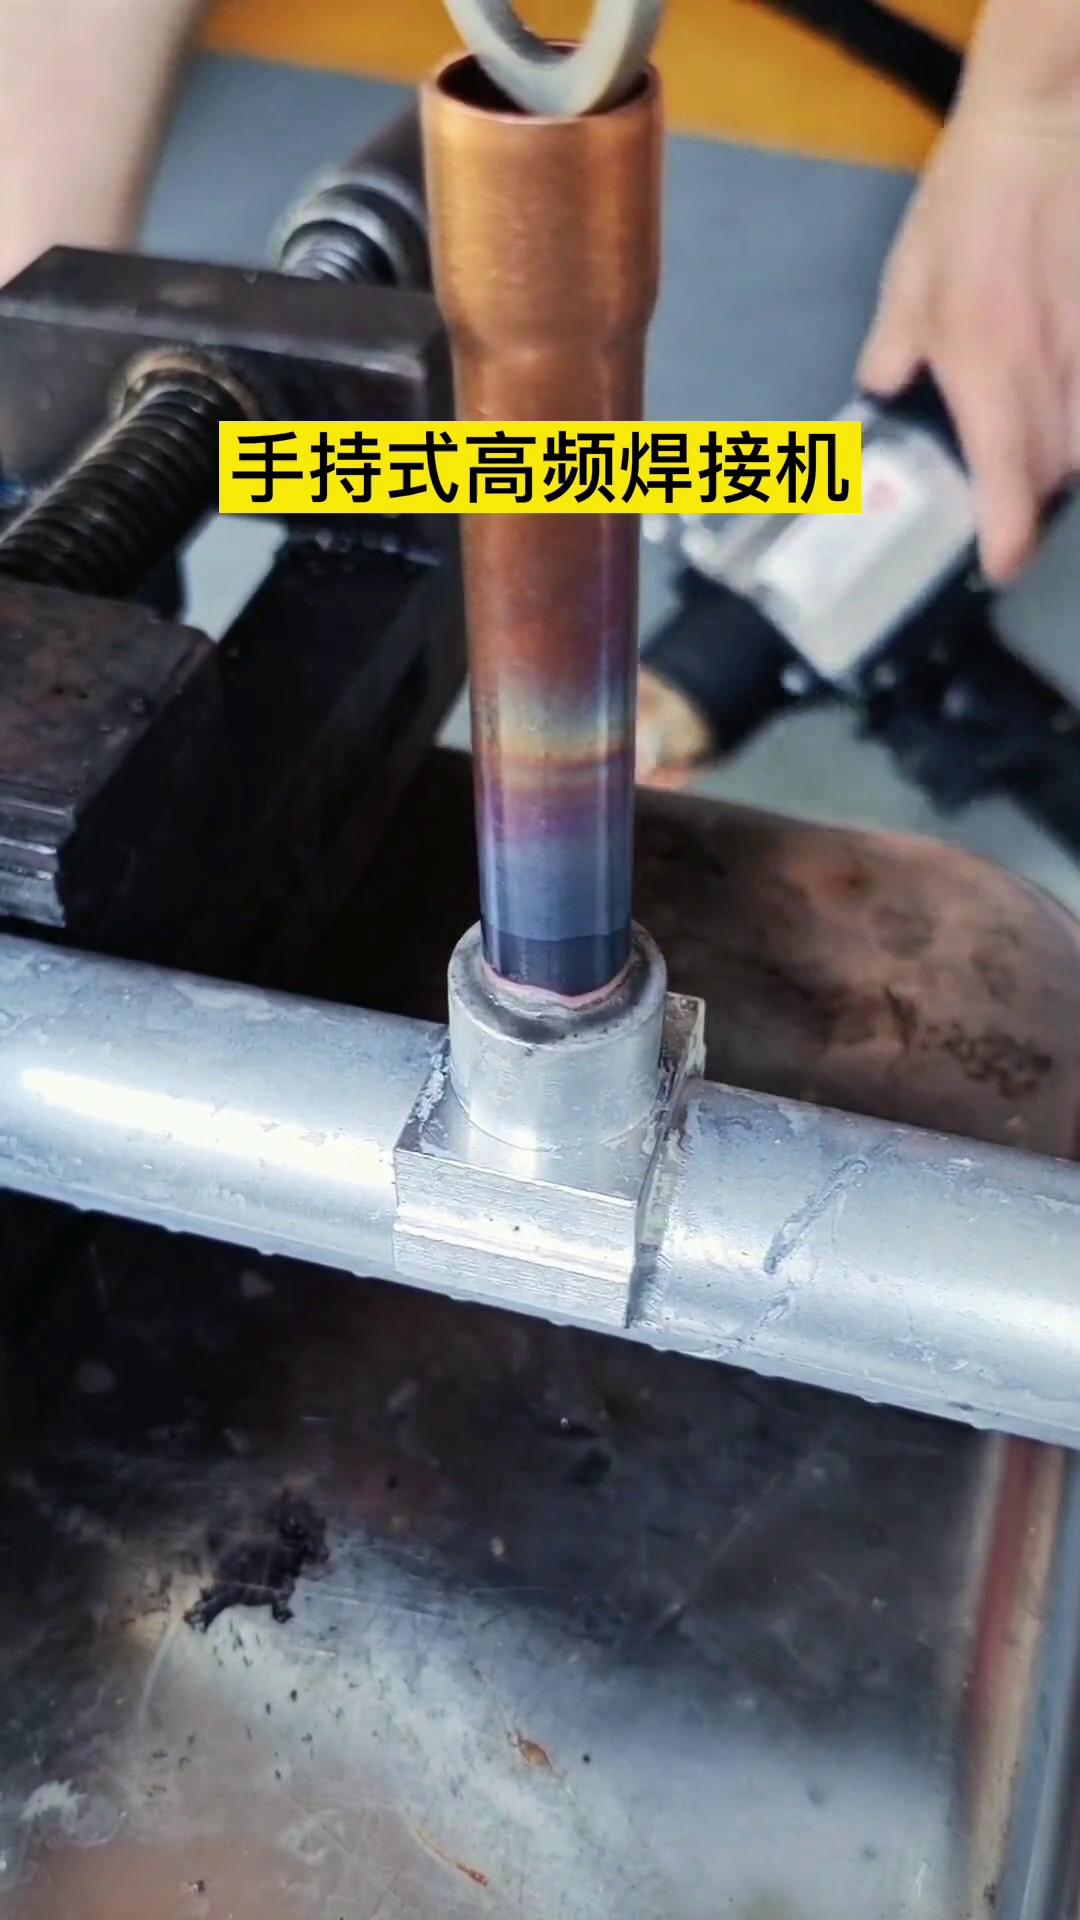 铜铝管钎焊-手持式高频焊接机-轻松完成焊接工艺